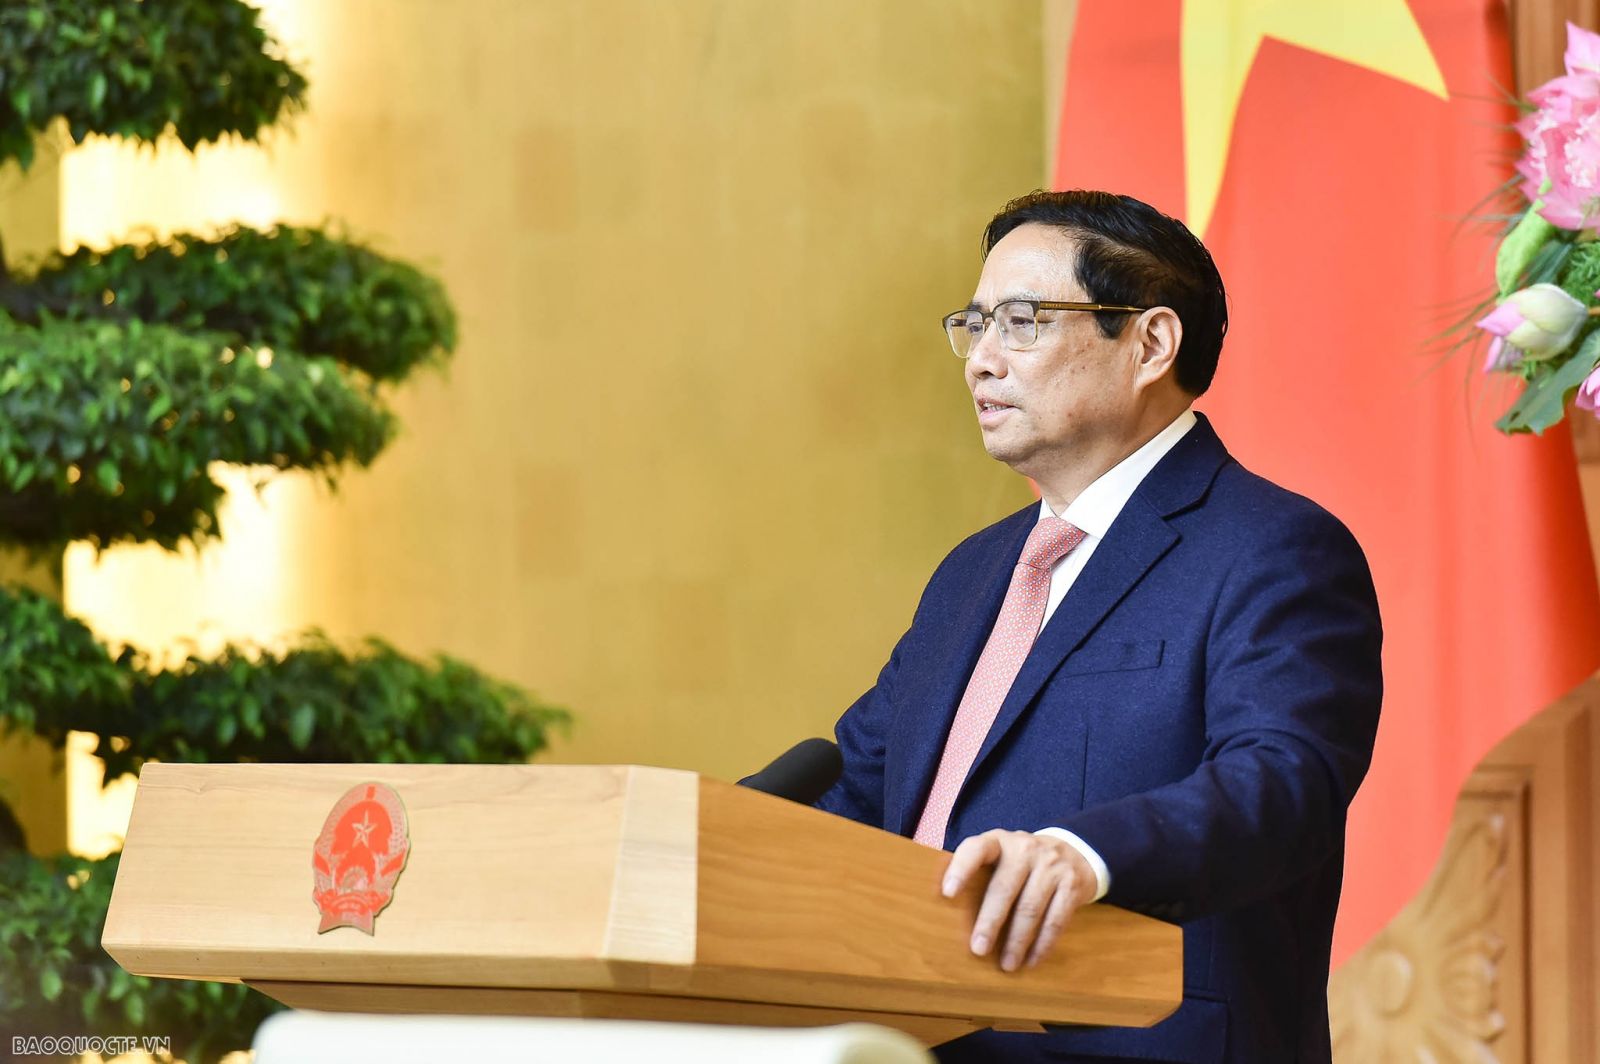 Thủ tướng gặp Trưởng cơ quan đại diện Việt Nam ở nước ngoài: Ngoại giao kinh tế phục vụ phát triển là ưu tiên cao